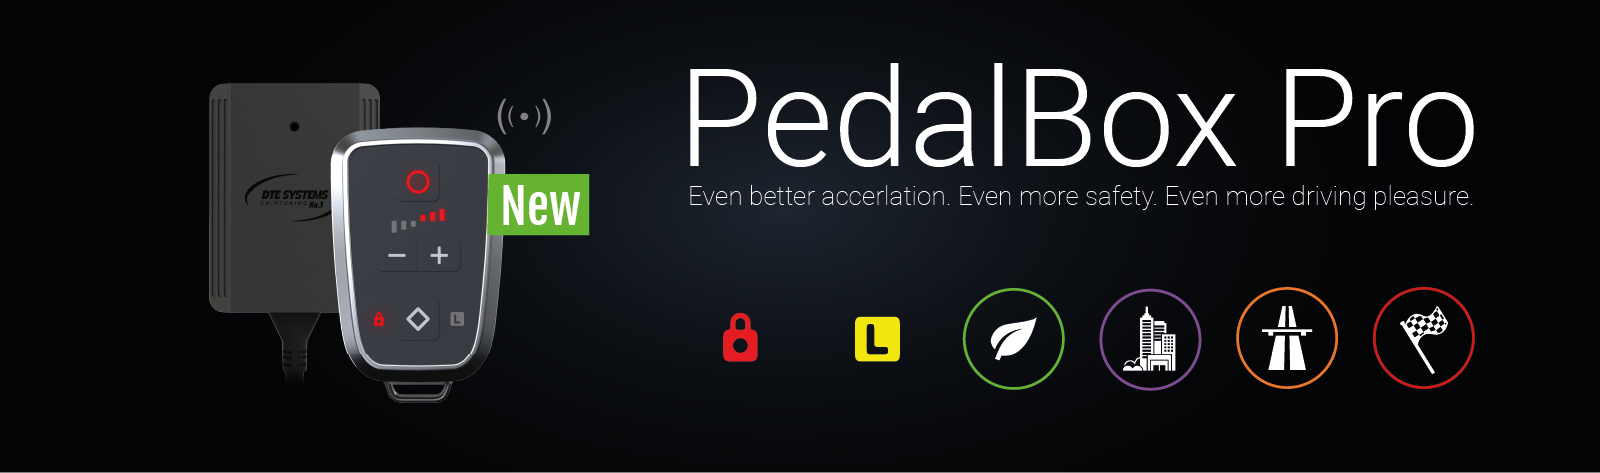 Release: Ceci est la nouvelle PedalBox Pro